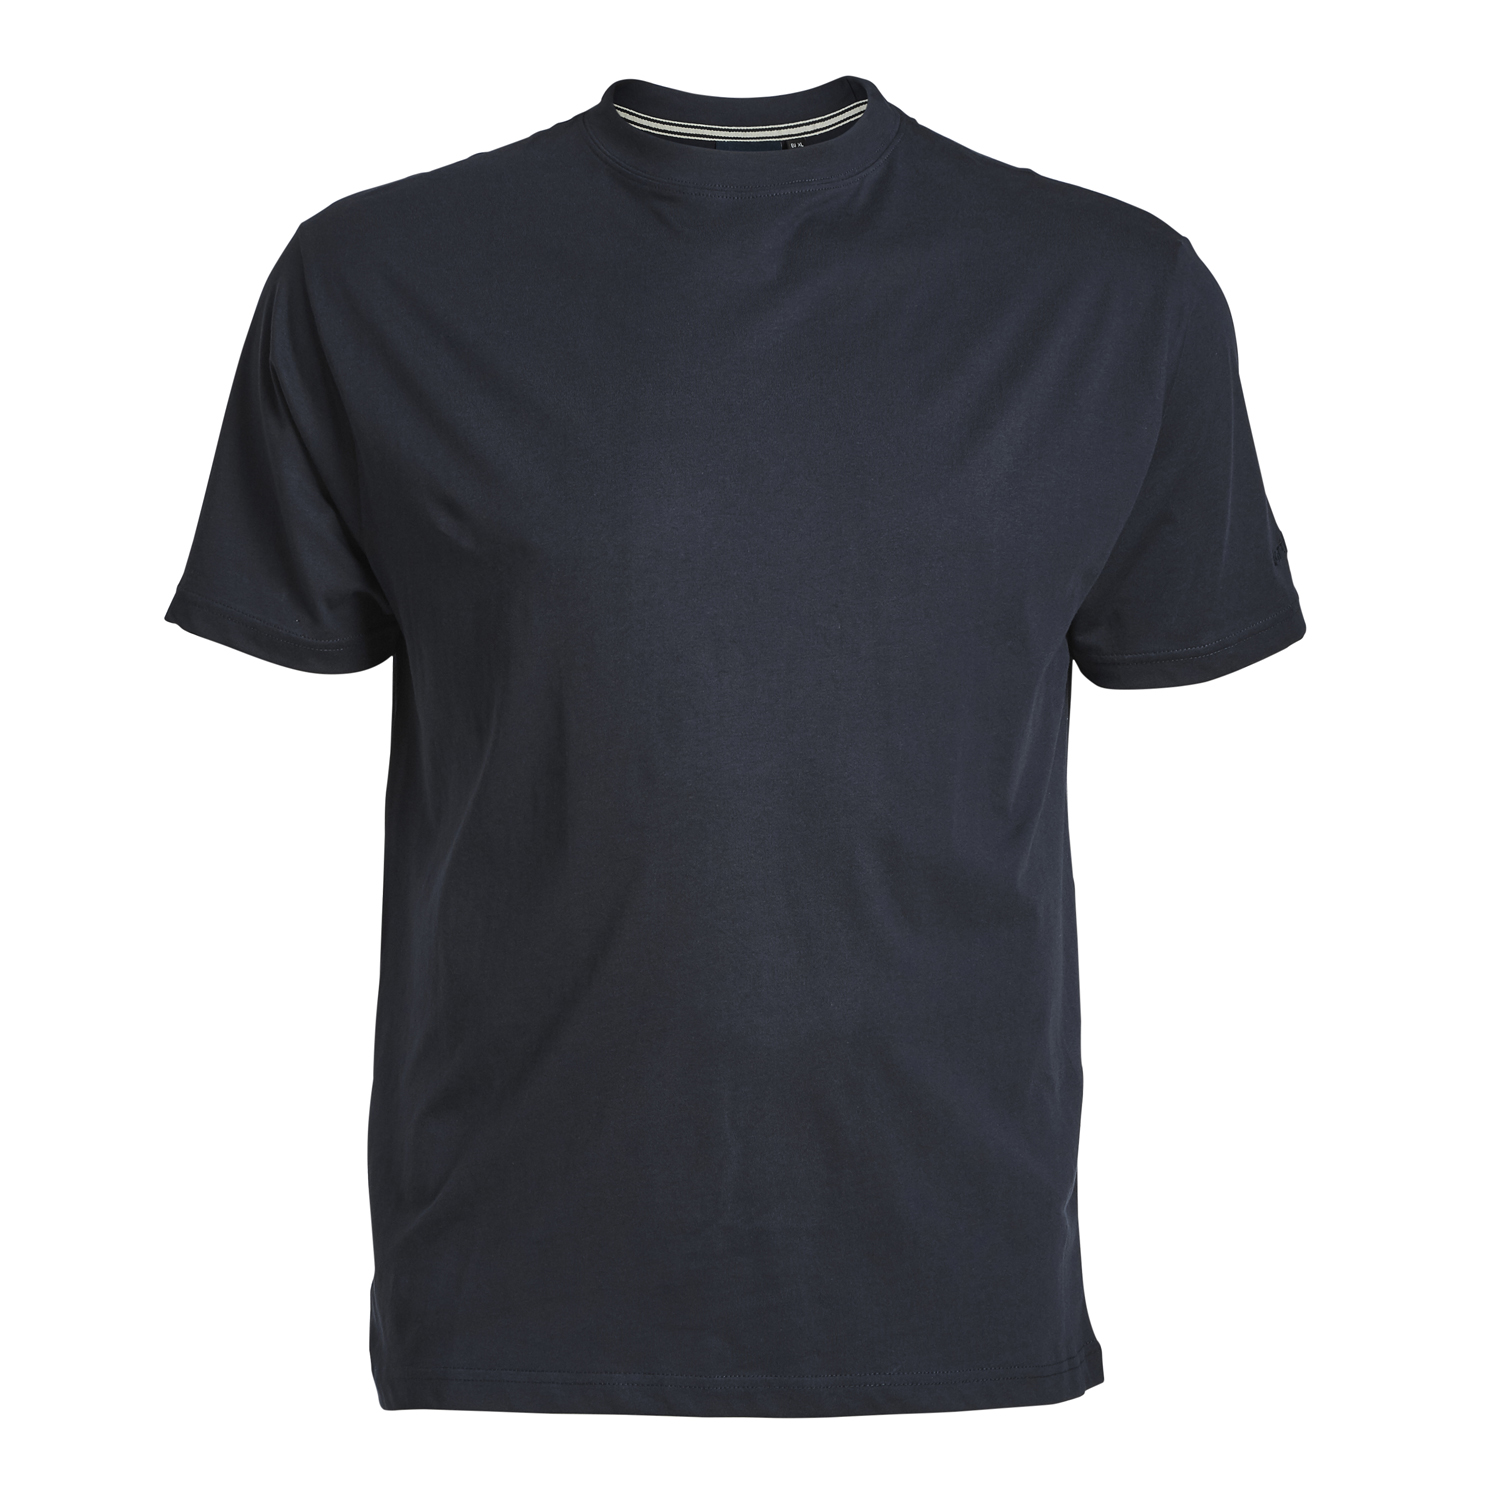 T-shirt bleu foncé avec col rond de North56°4 grandes tailles jusqu'au 8XL